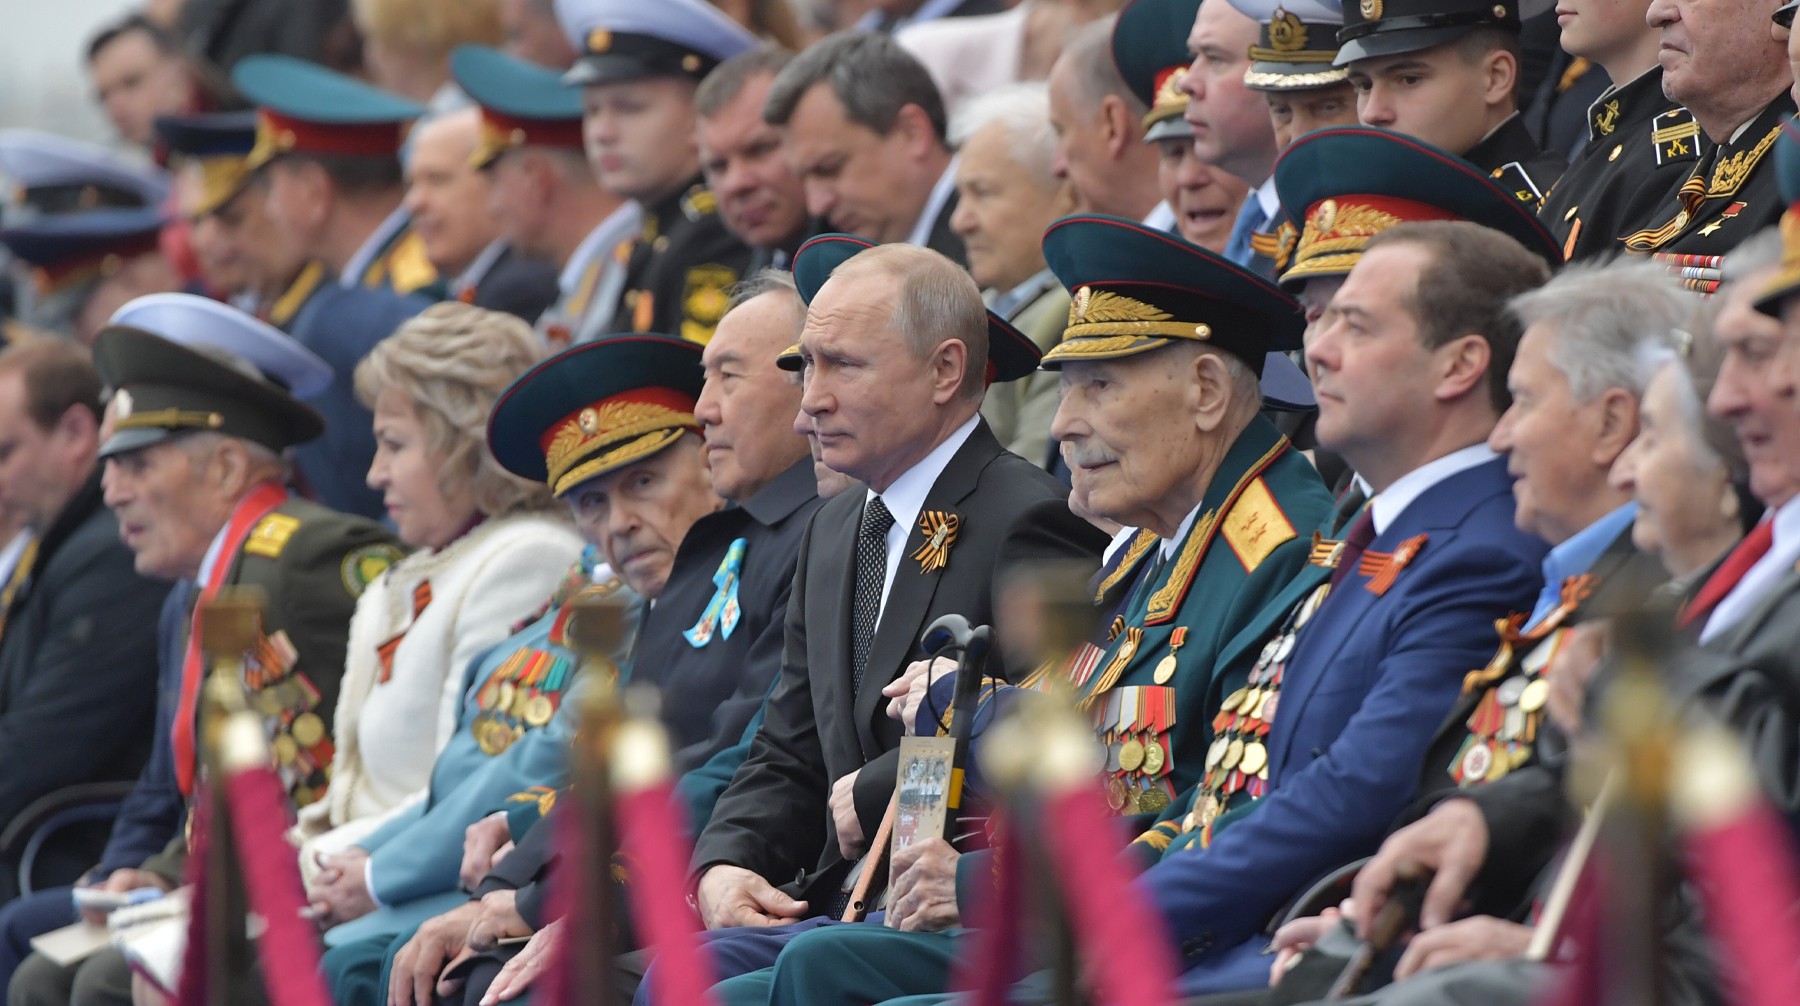 Dailystorm - Иностранных лидеров попросят отложить визит в Москву из-за переноса парада Победы